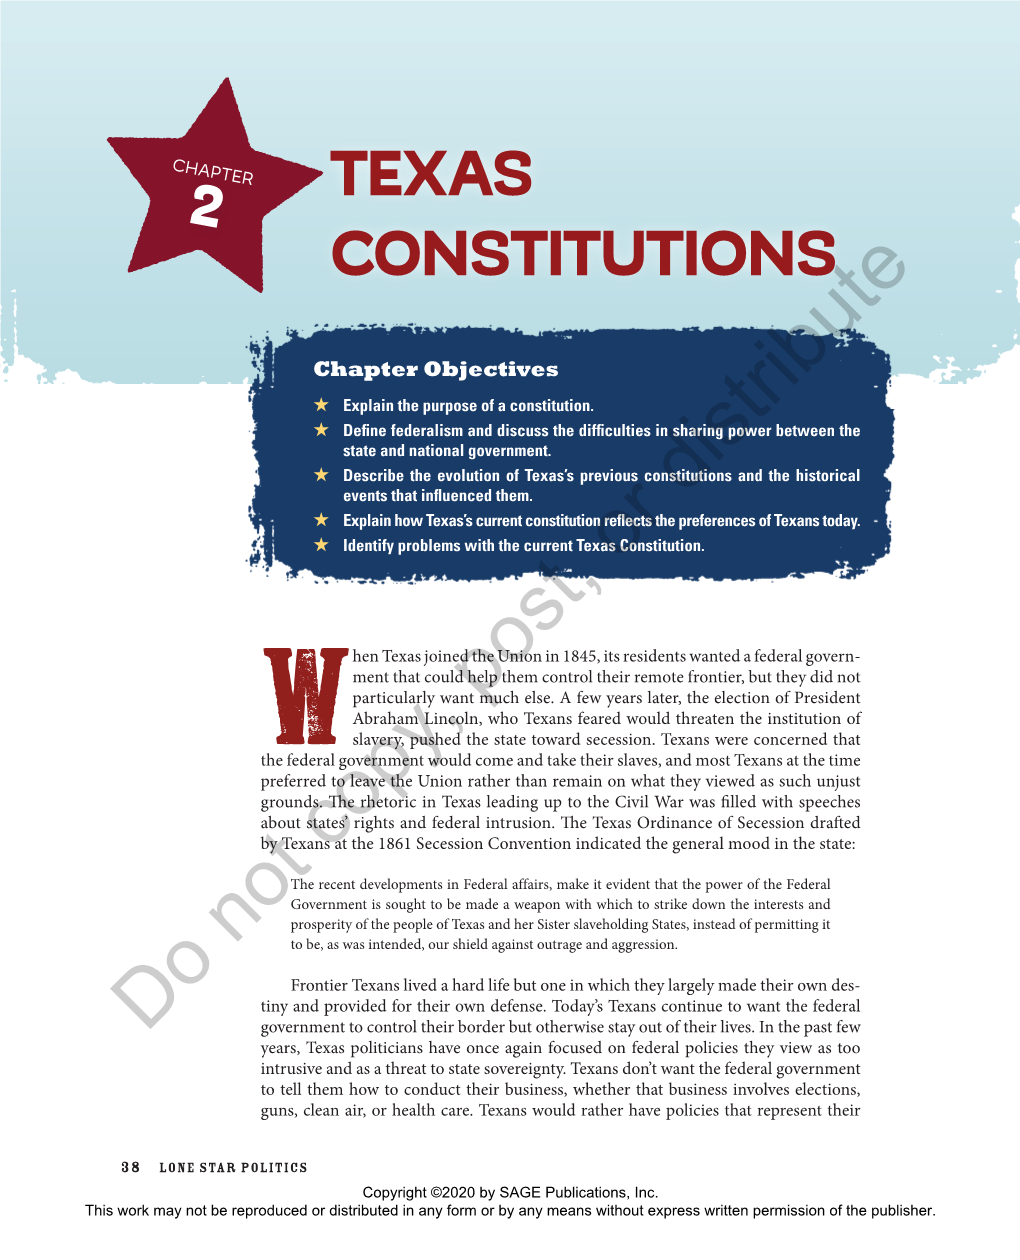 Texas Constitutions